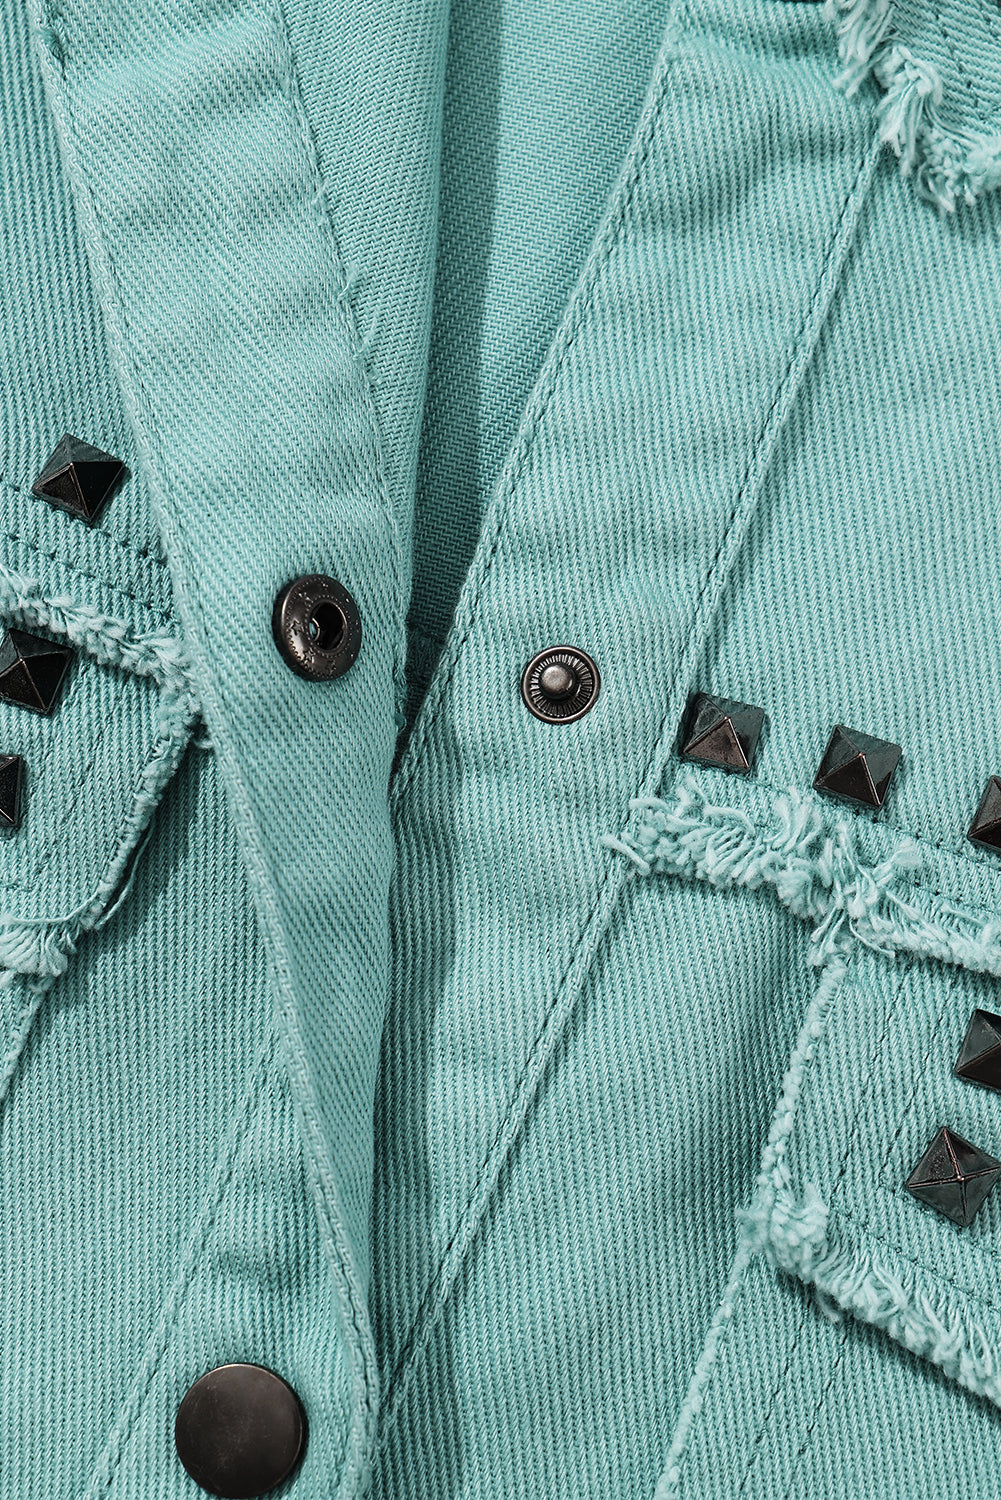 Green Frayed Trim Vintage Rivet Denim Jacket - Bellisima Clothing Collective